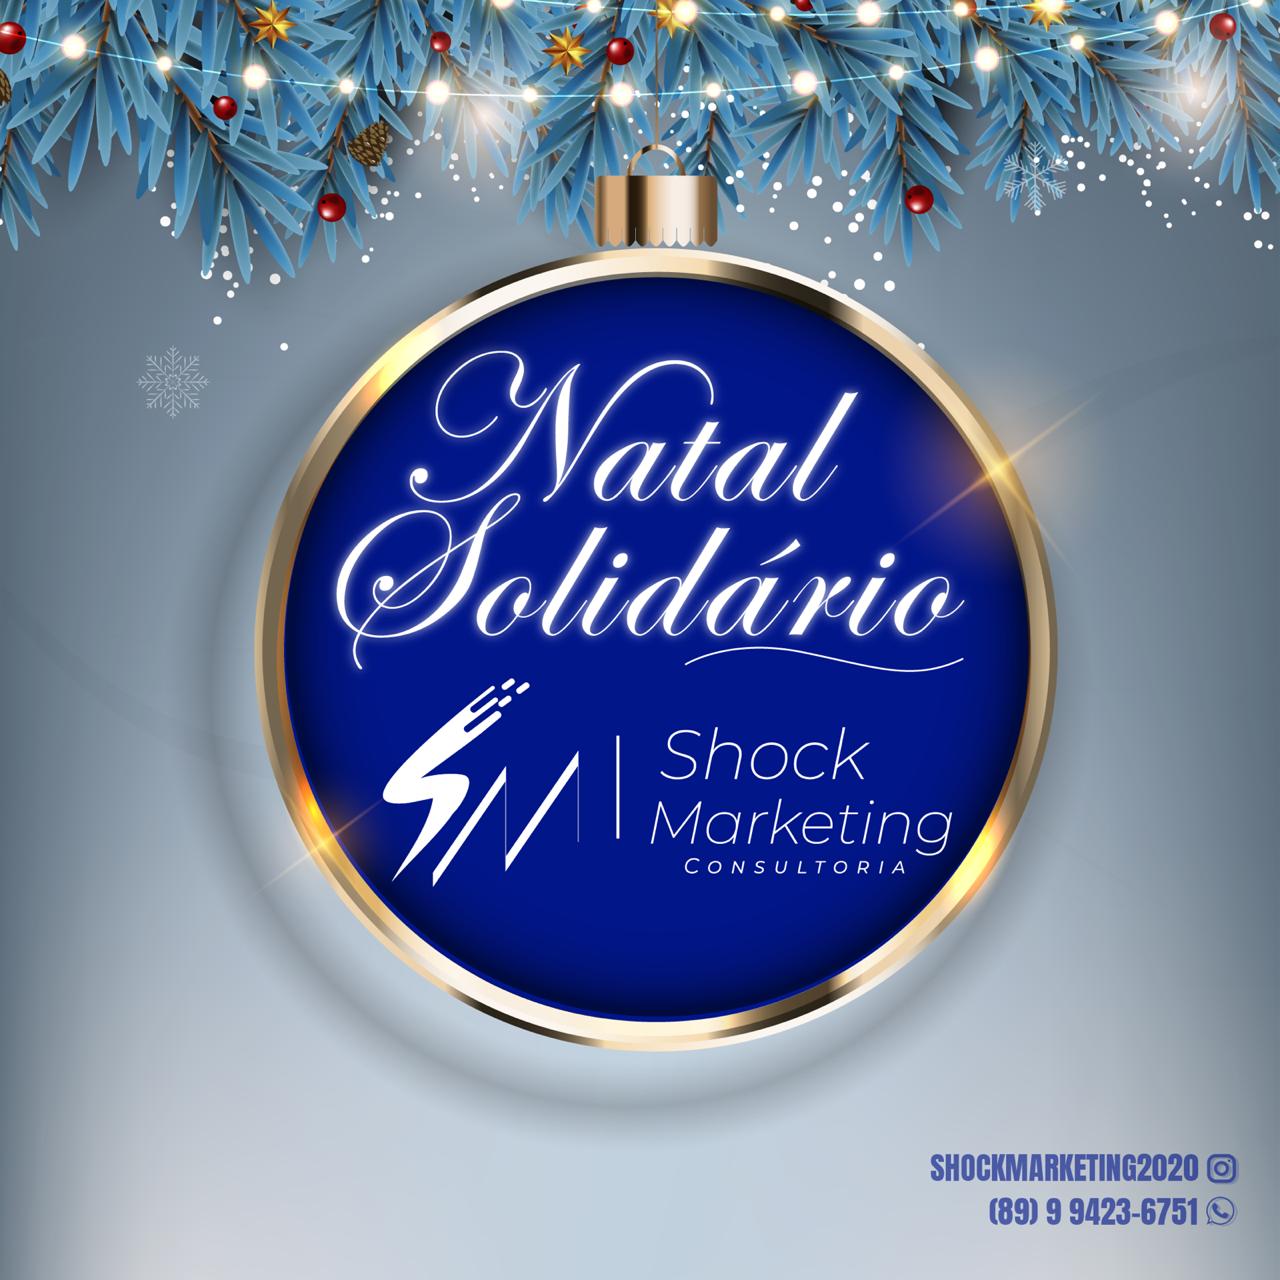 Agência Shock Marketing promove campanha 'Natal Solidário' em Picos; veja como ajudar